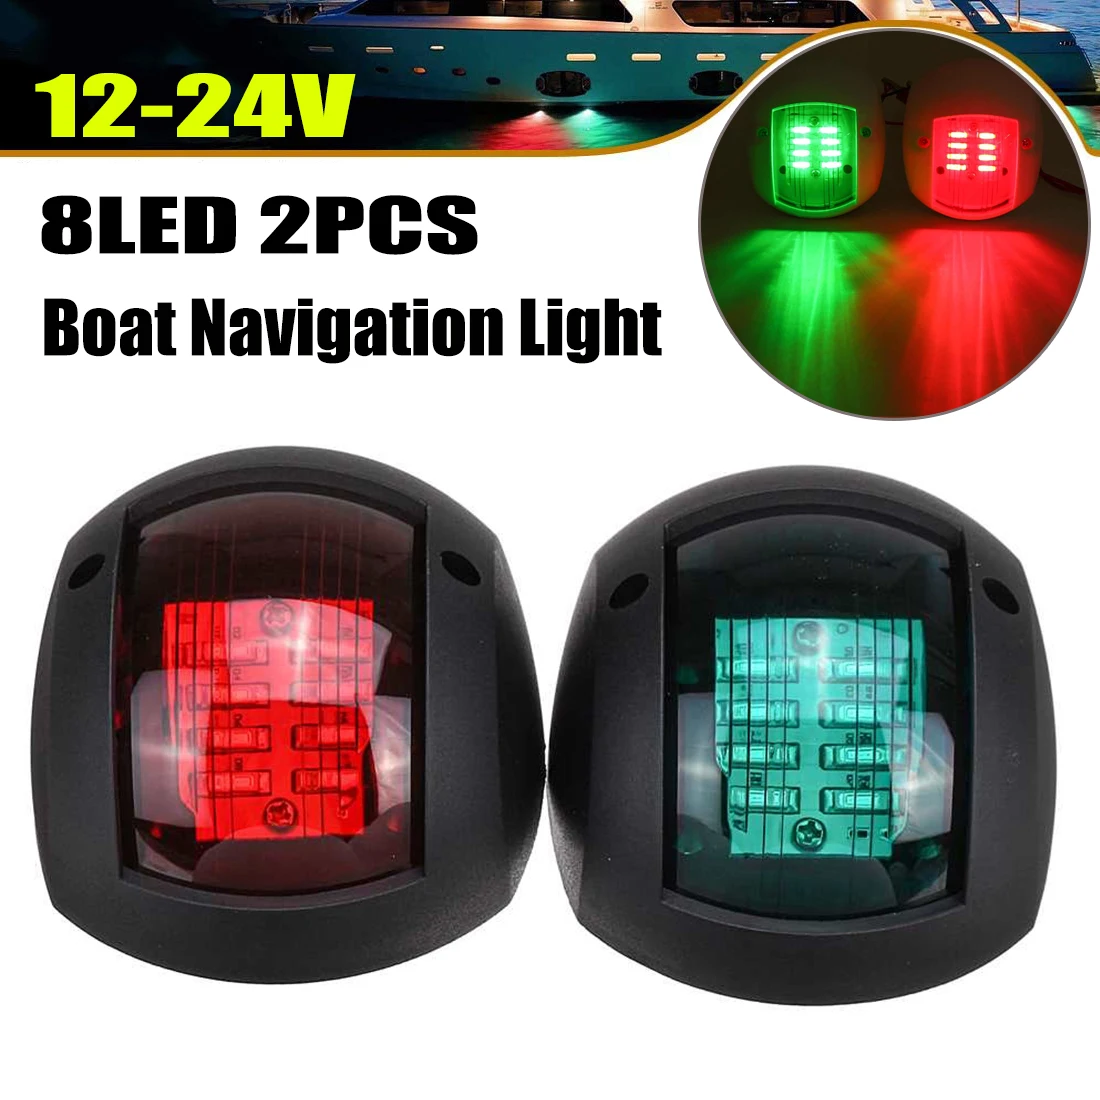 

2PCS 12V-24V LED Navigation Light Signal Lamp Marine Boat Yacht Red Green Bulb Port Starboard Side Lighting Sailing